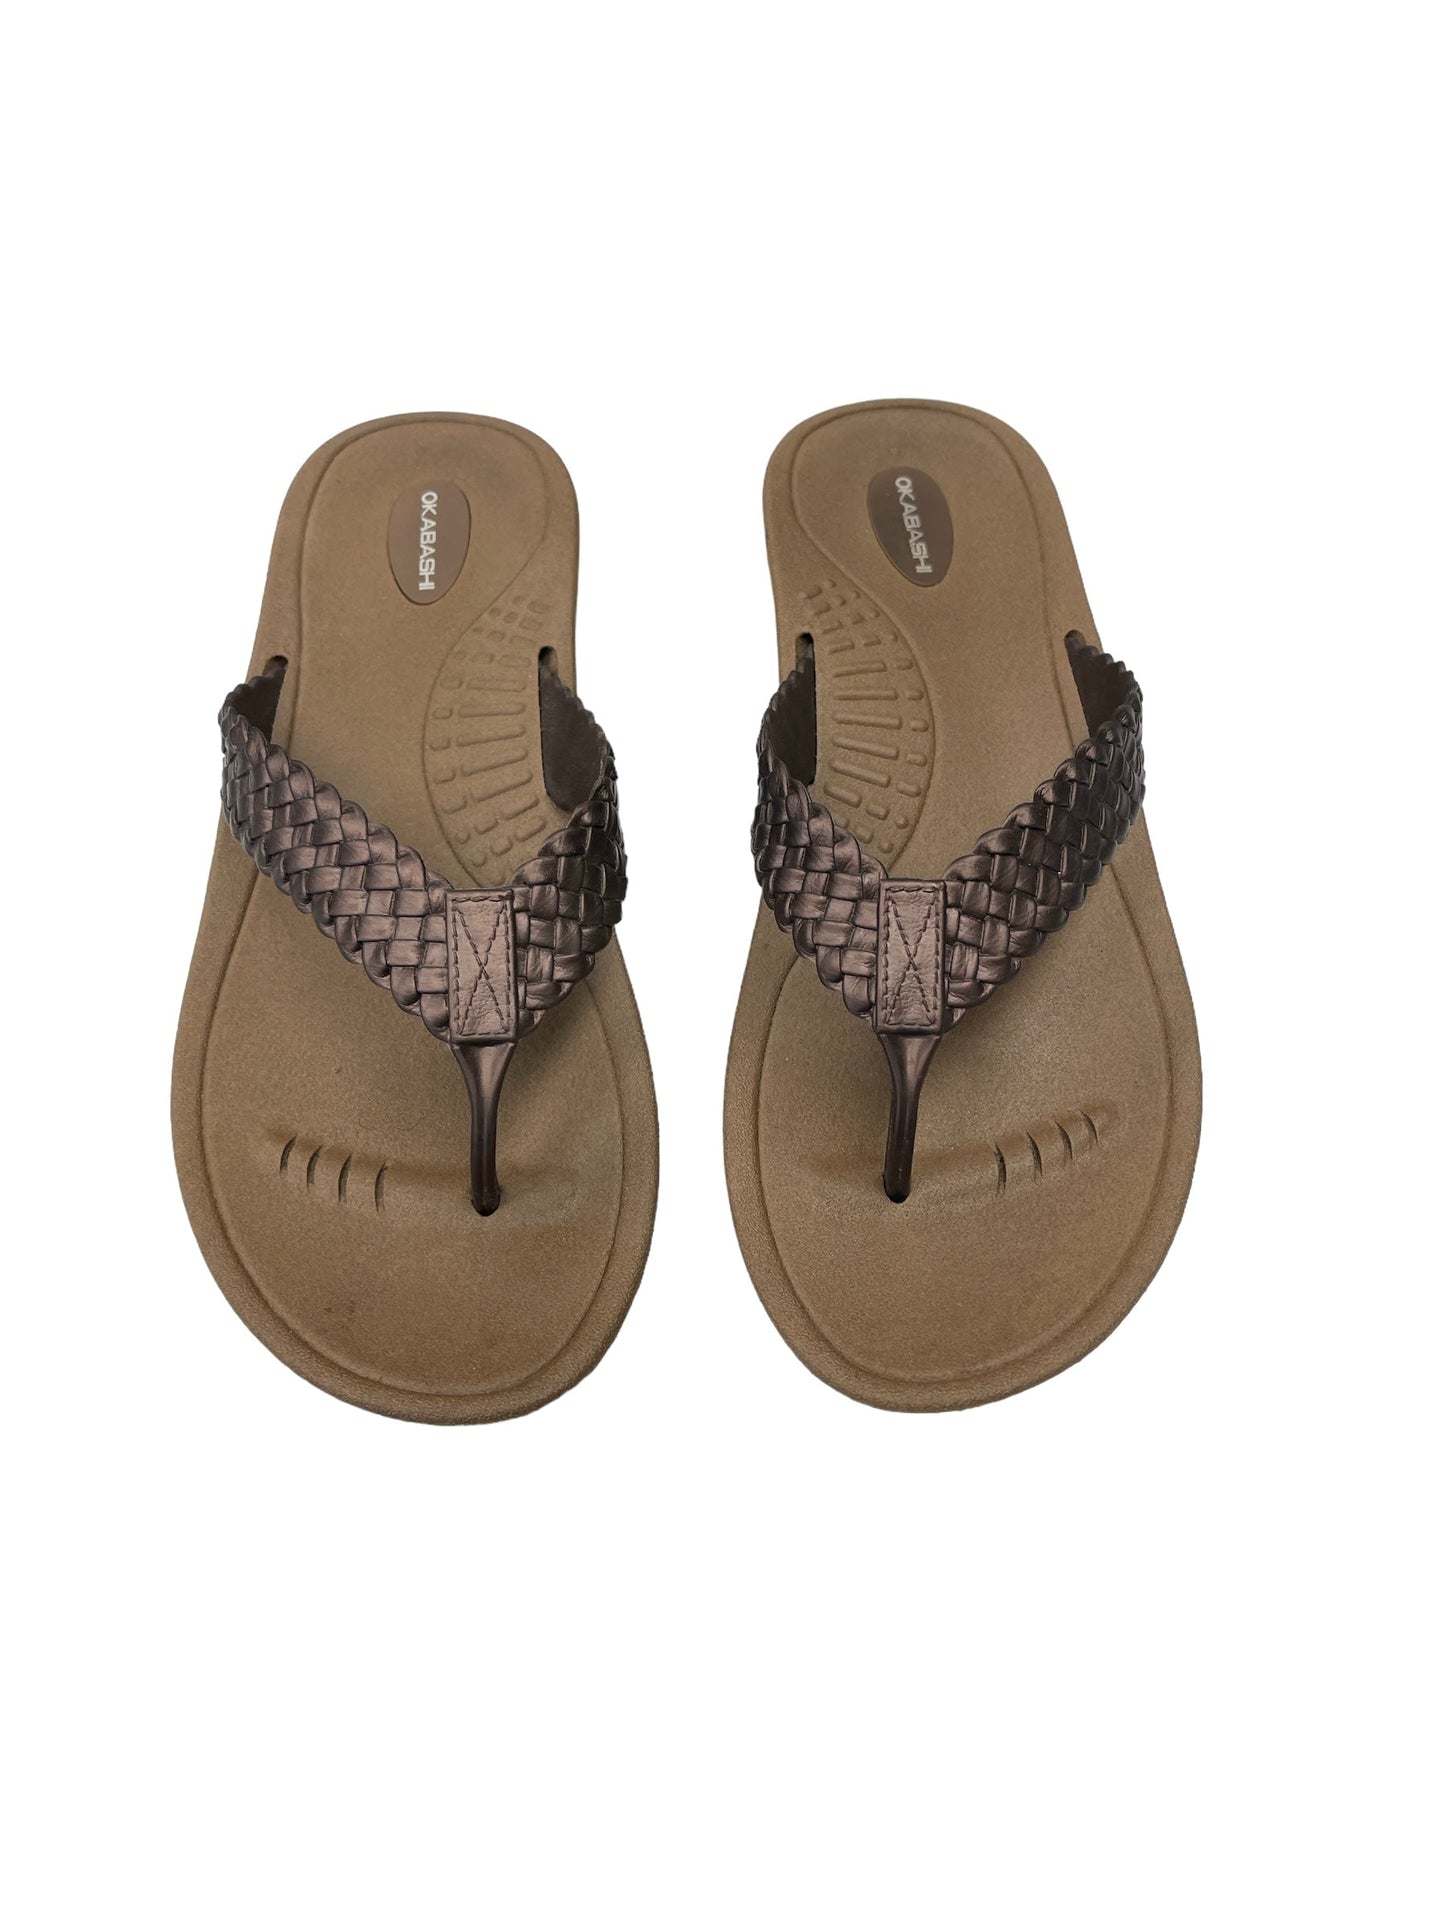 Sandals Flip Flops By Okabashi